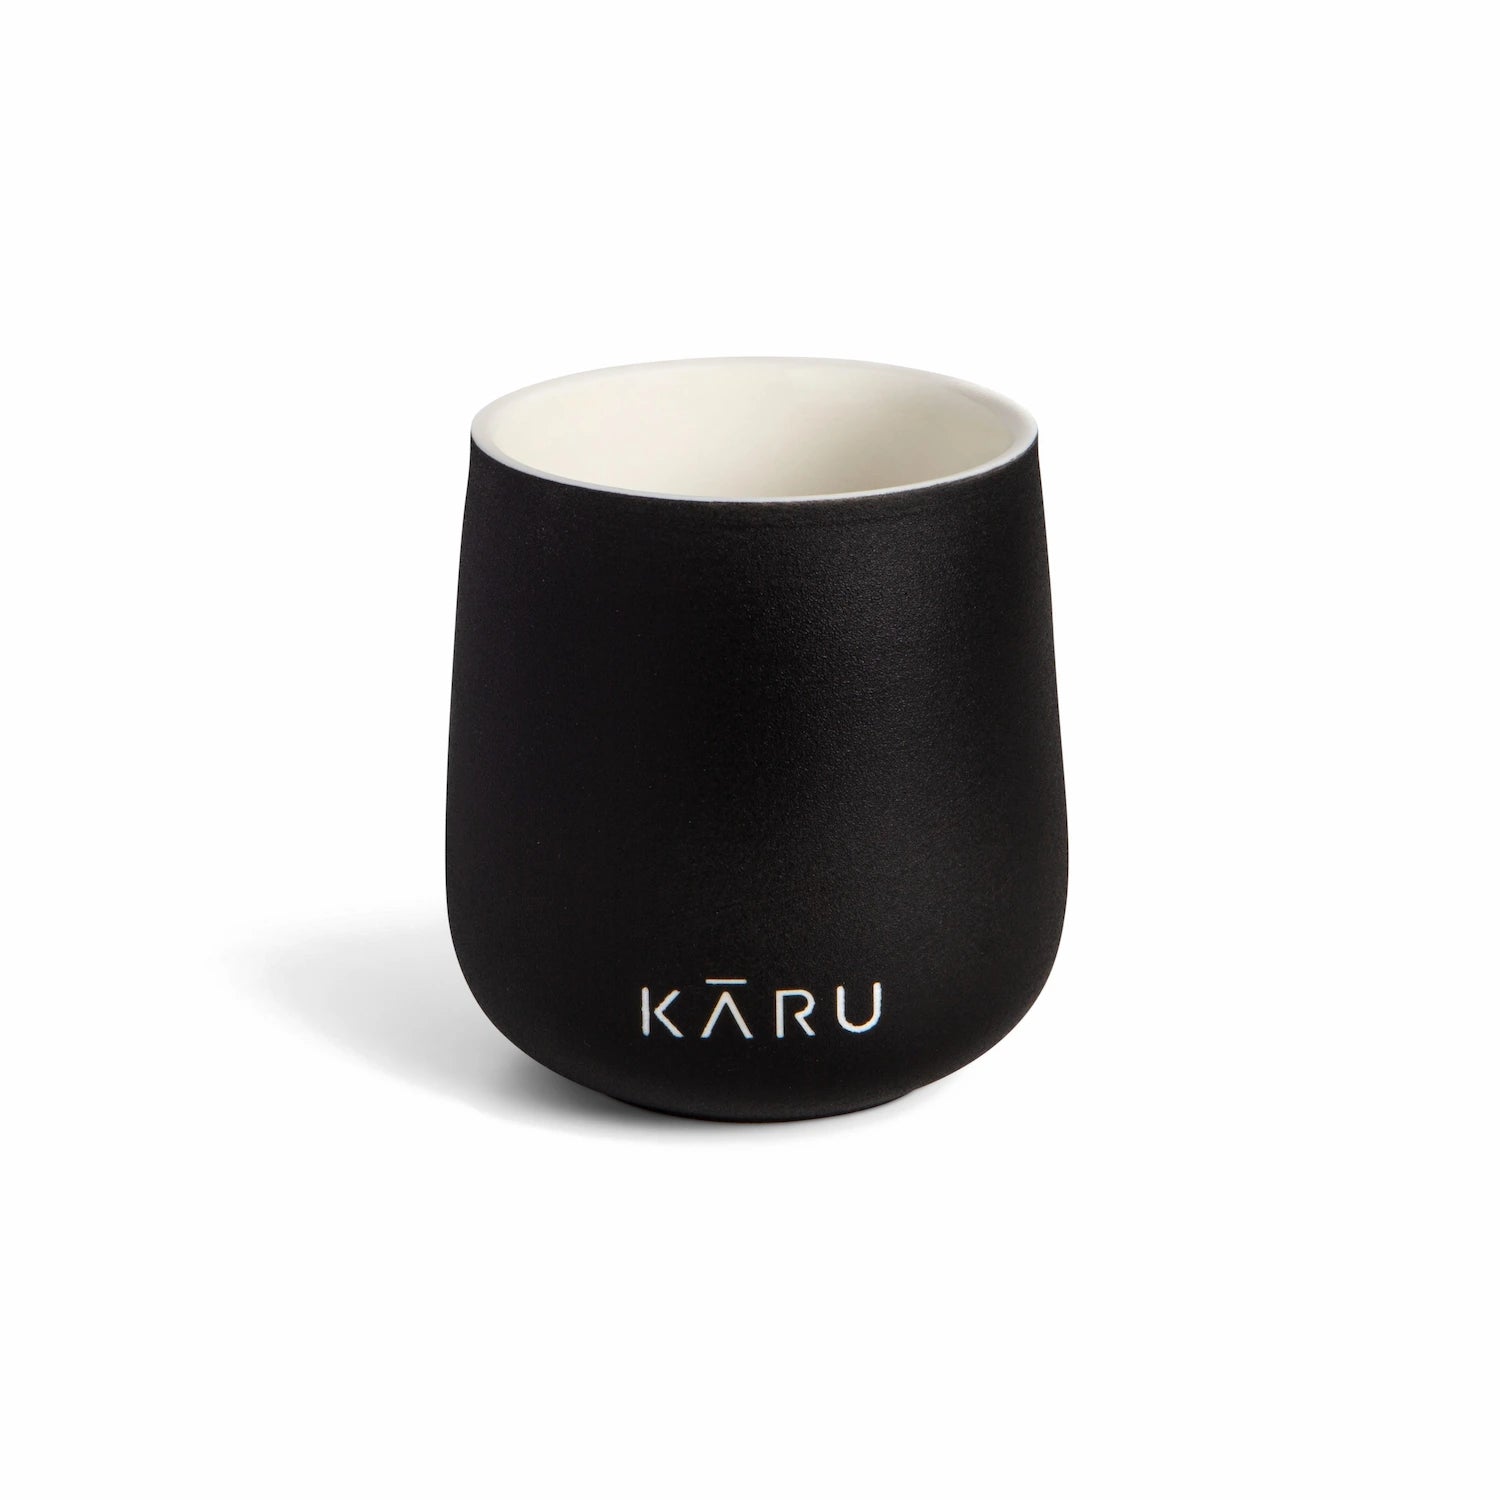 Eine schwarze Teetasse KĀRU aus Keramik (doppelwandig) mit dem Wort Matcha Kāru darauf.